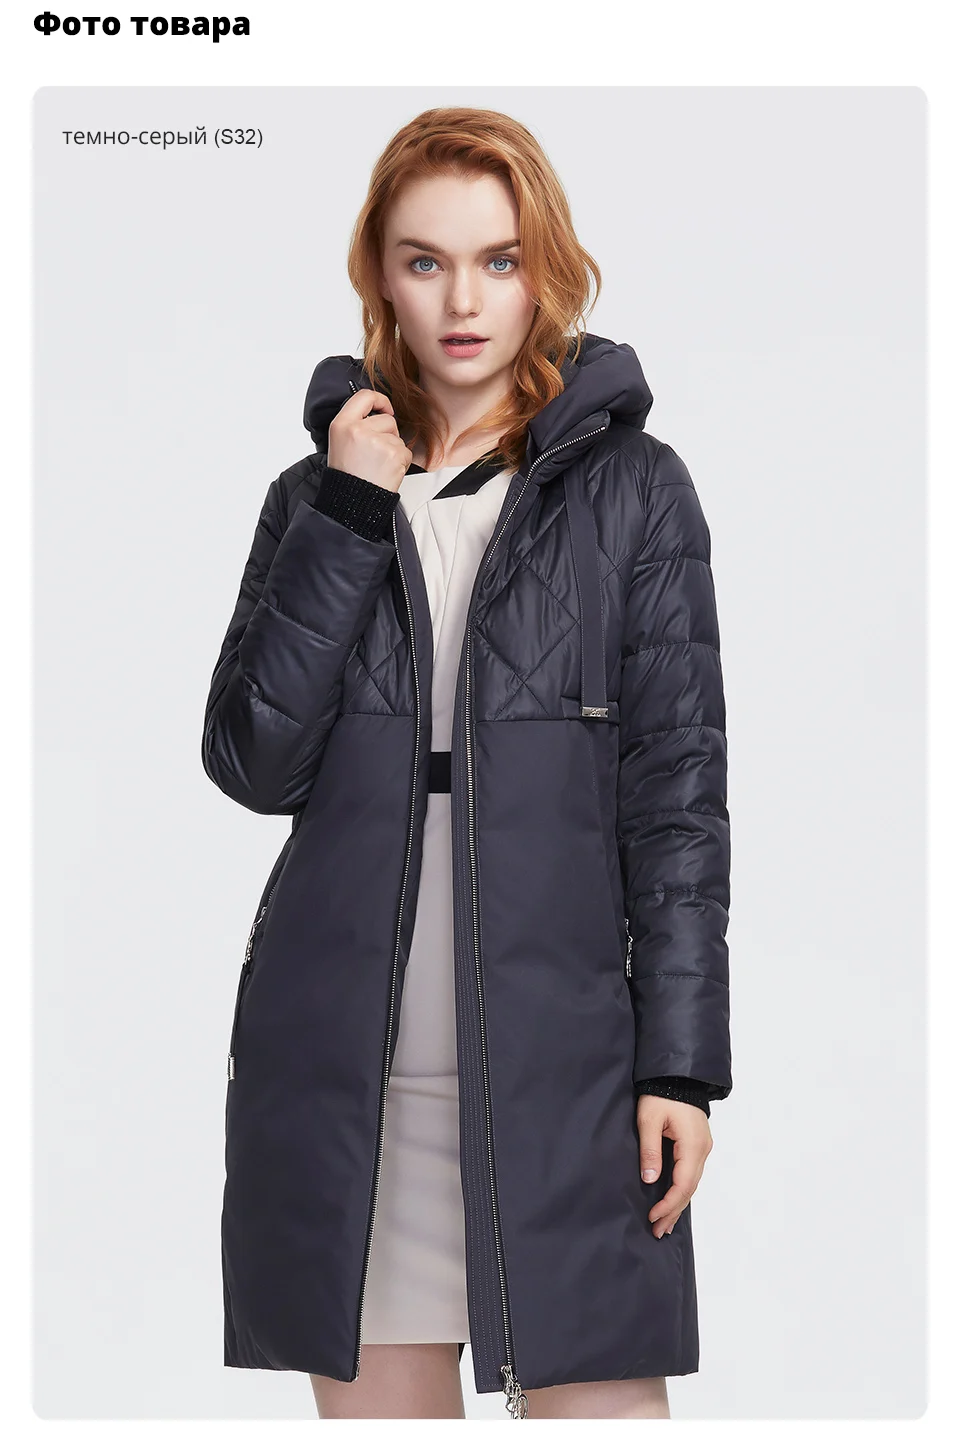 ANDVERY Зимняя новая коллекция женская зимняя куртка воротник из натурального меха высокого качества плотное хлопковое с капюшоном средней длины теплая парка 9850